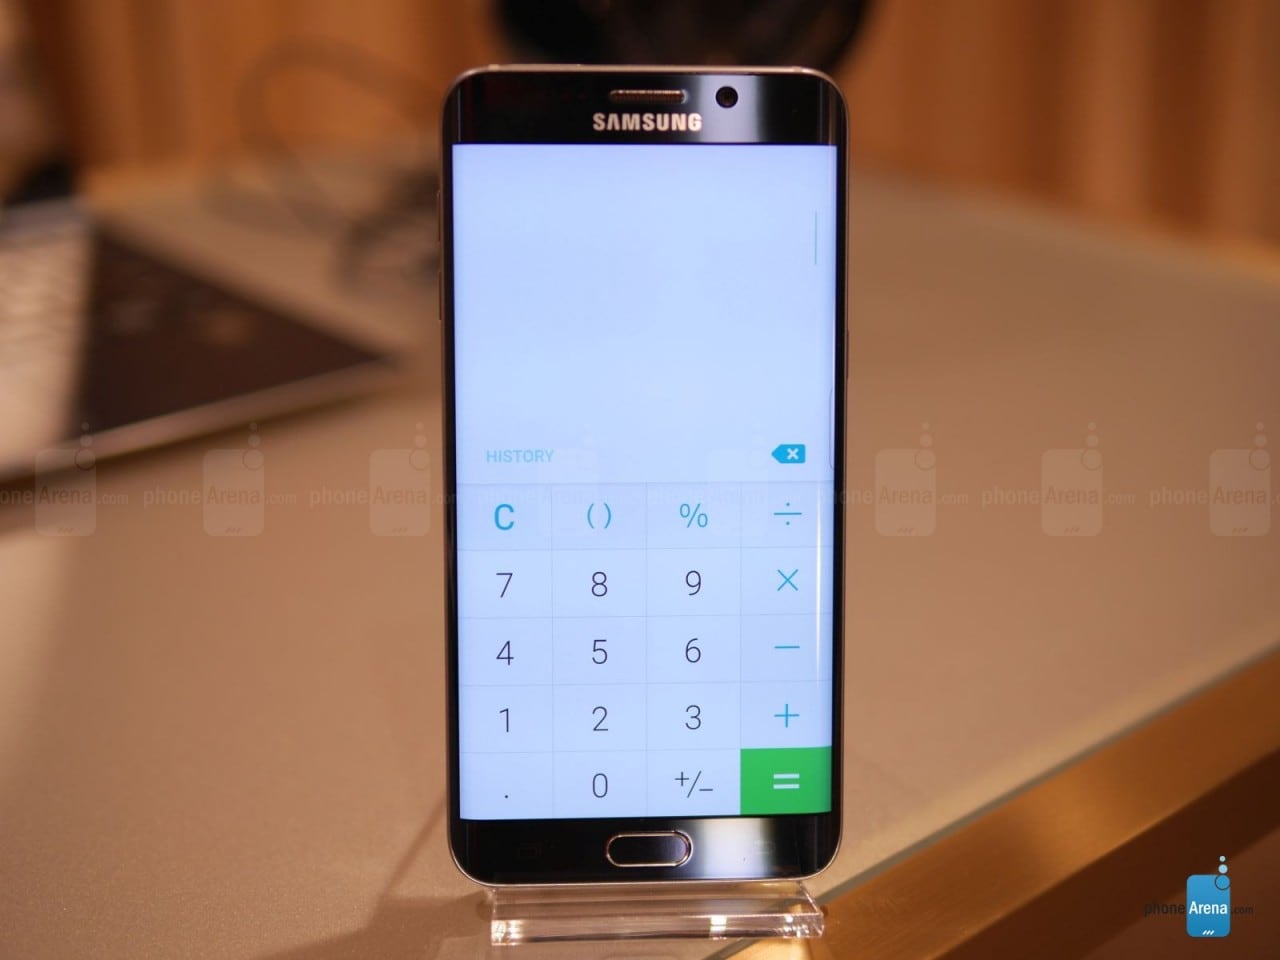 Le chiamate dei top di gamma Samsung possono essere intercettate